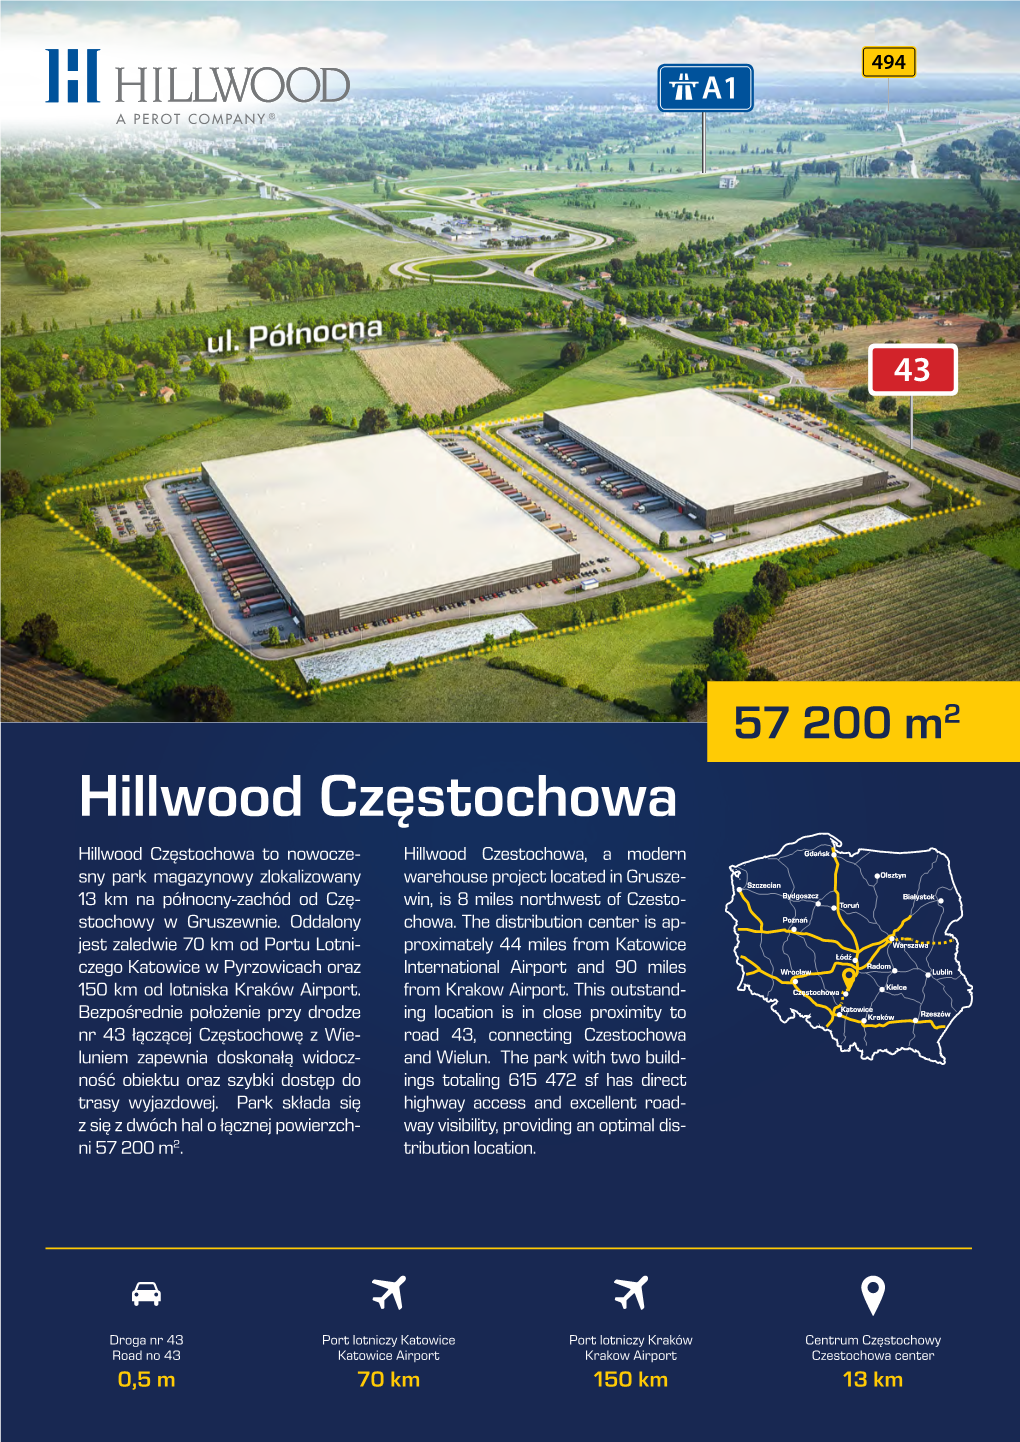 Hillwood Częstochowa